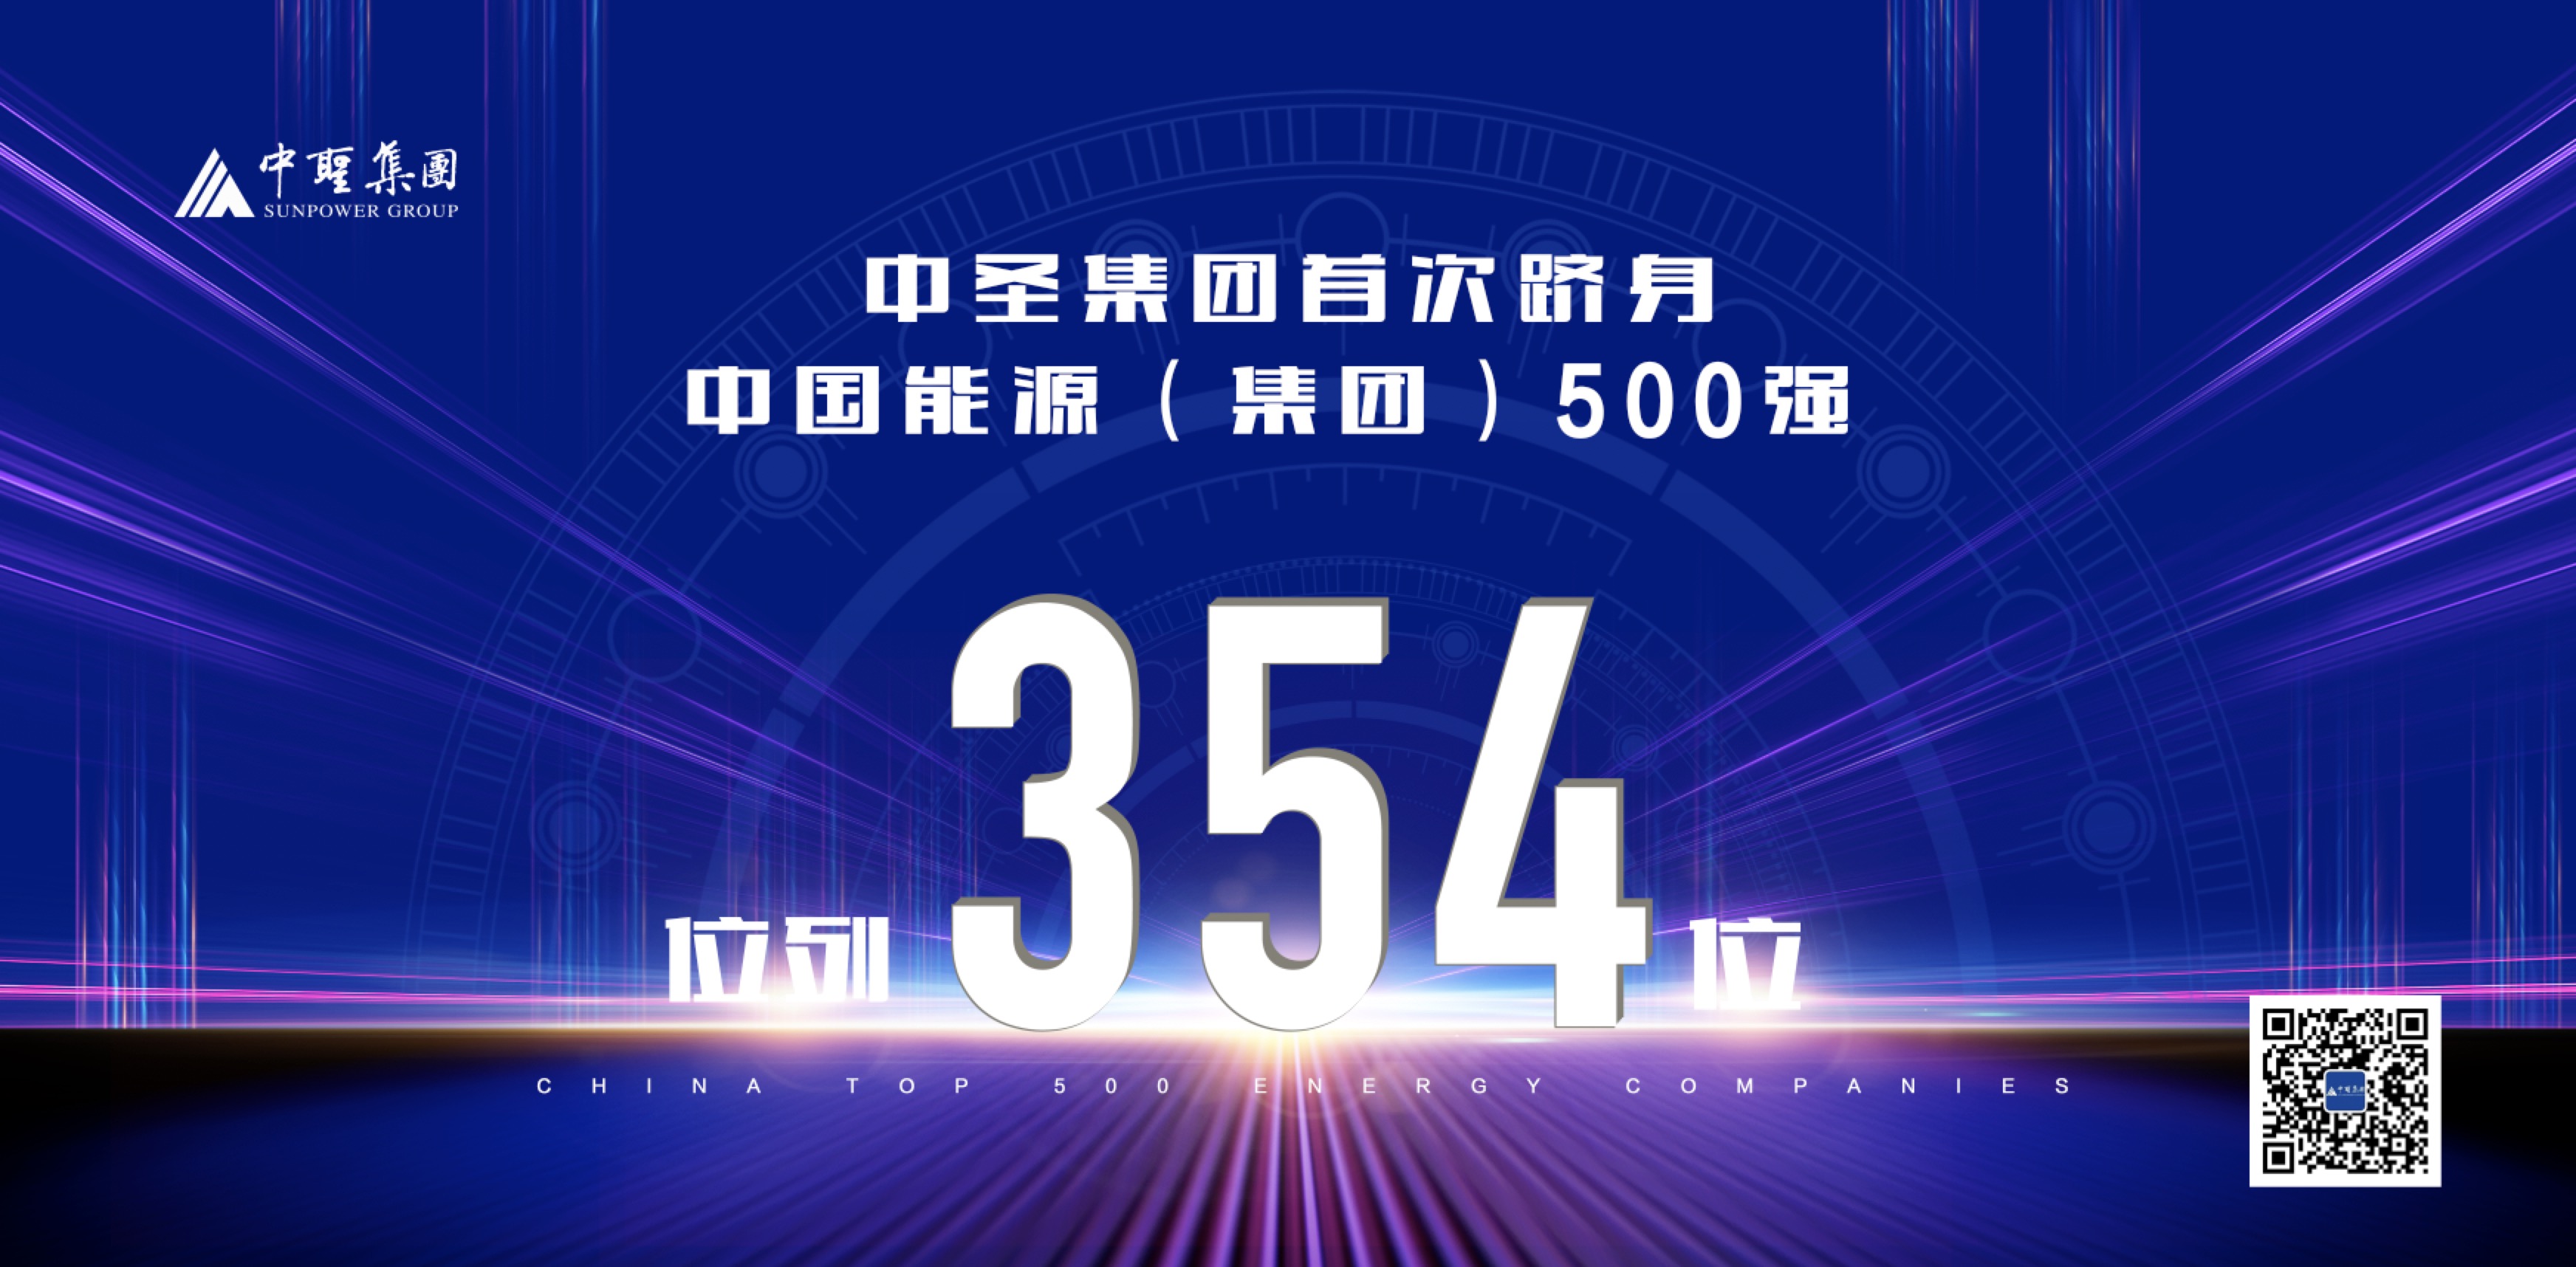 2019年12月15日，js6666金沙登录入口首次跻身“中国能源（集团）500强榜单”，位列354位。